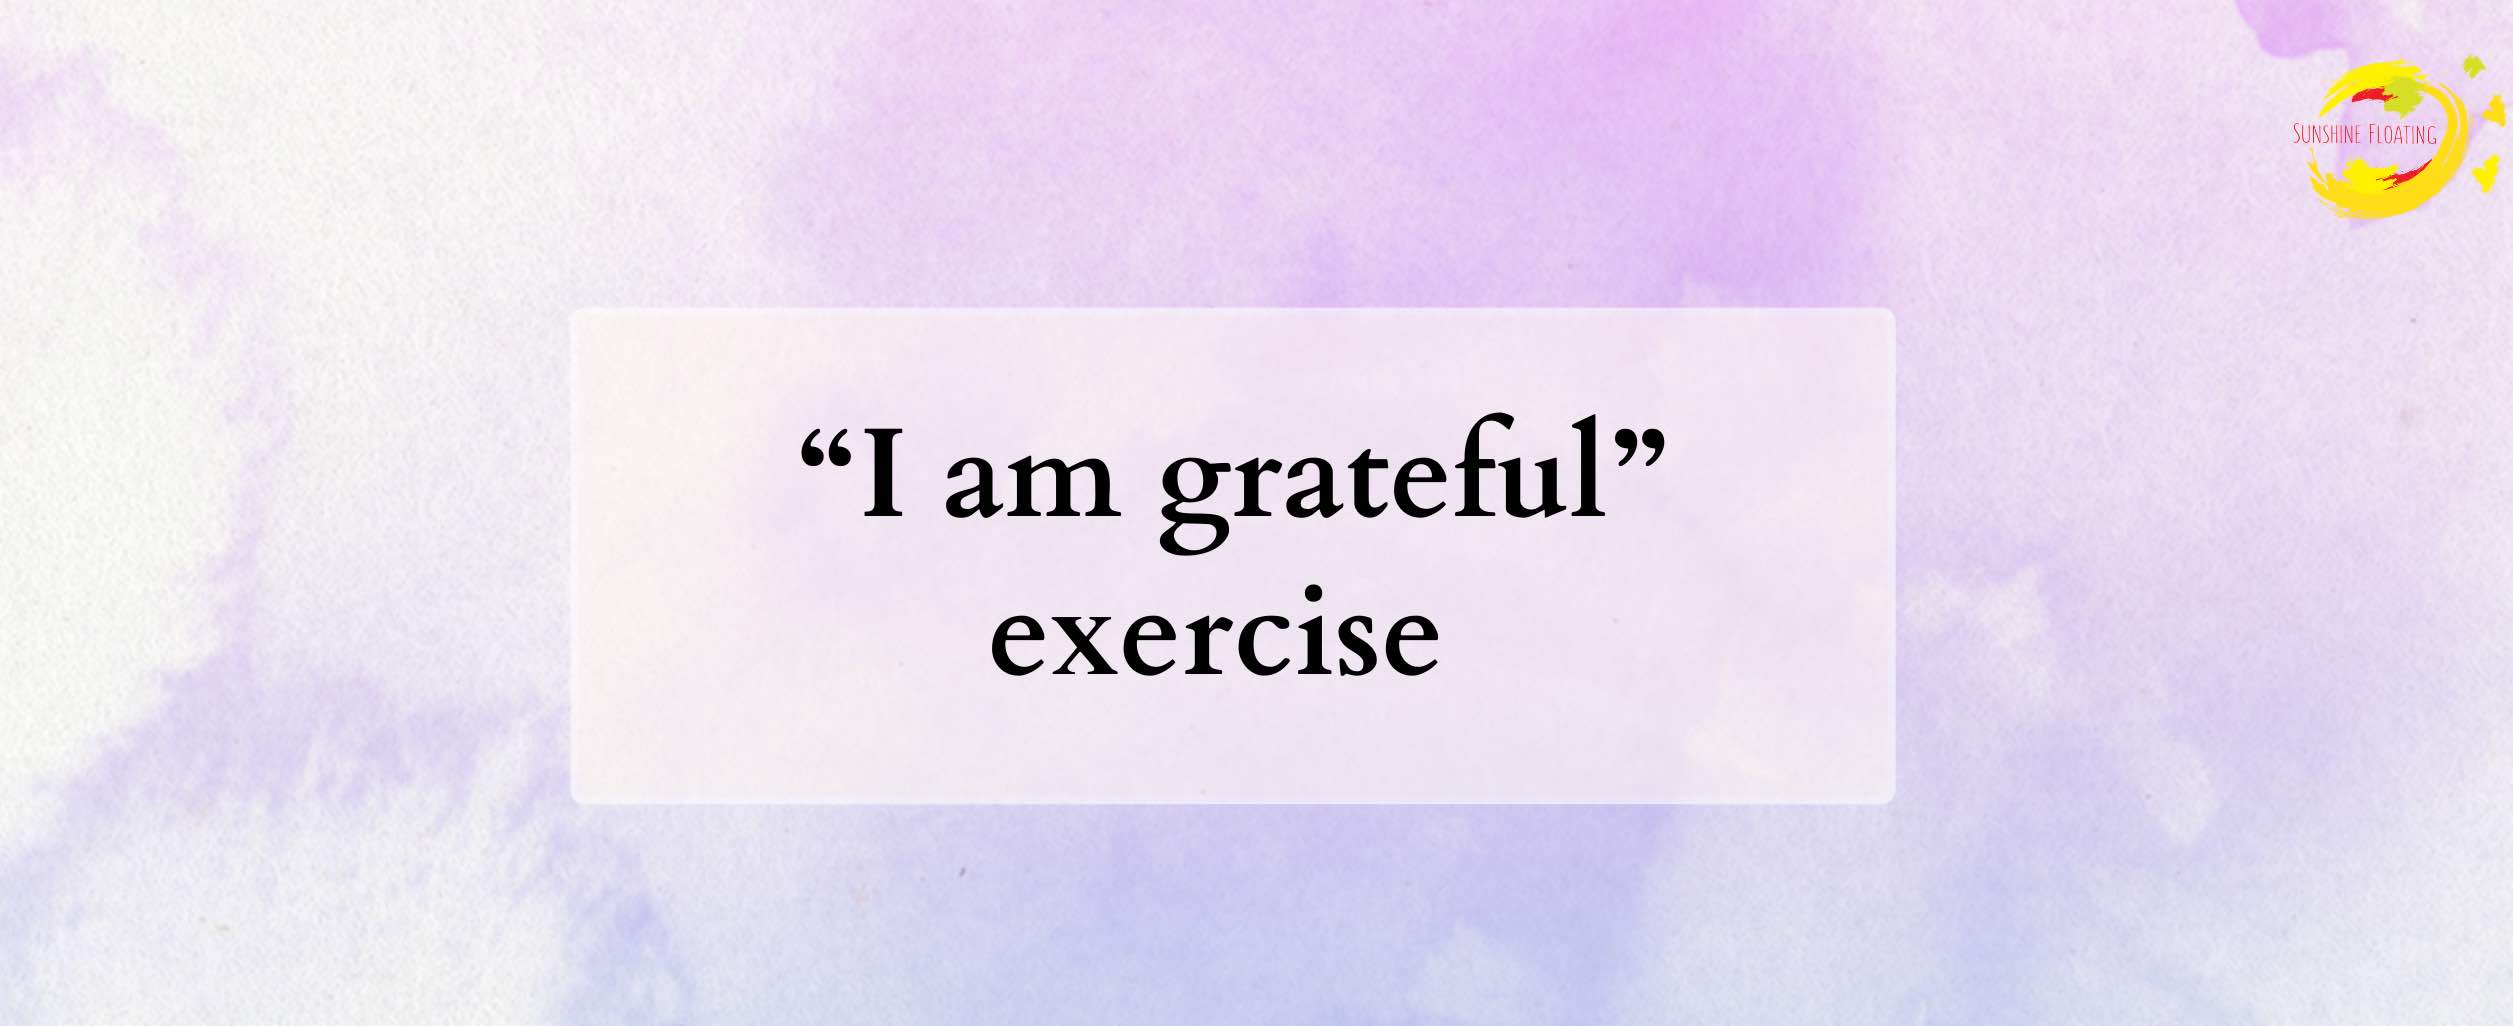 I-am-grateful-exercise-free-wellbeing-resources-sunshinefloating